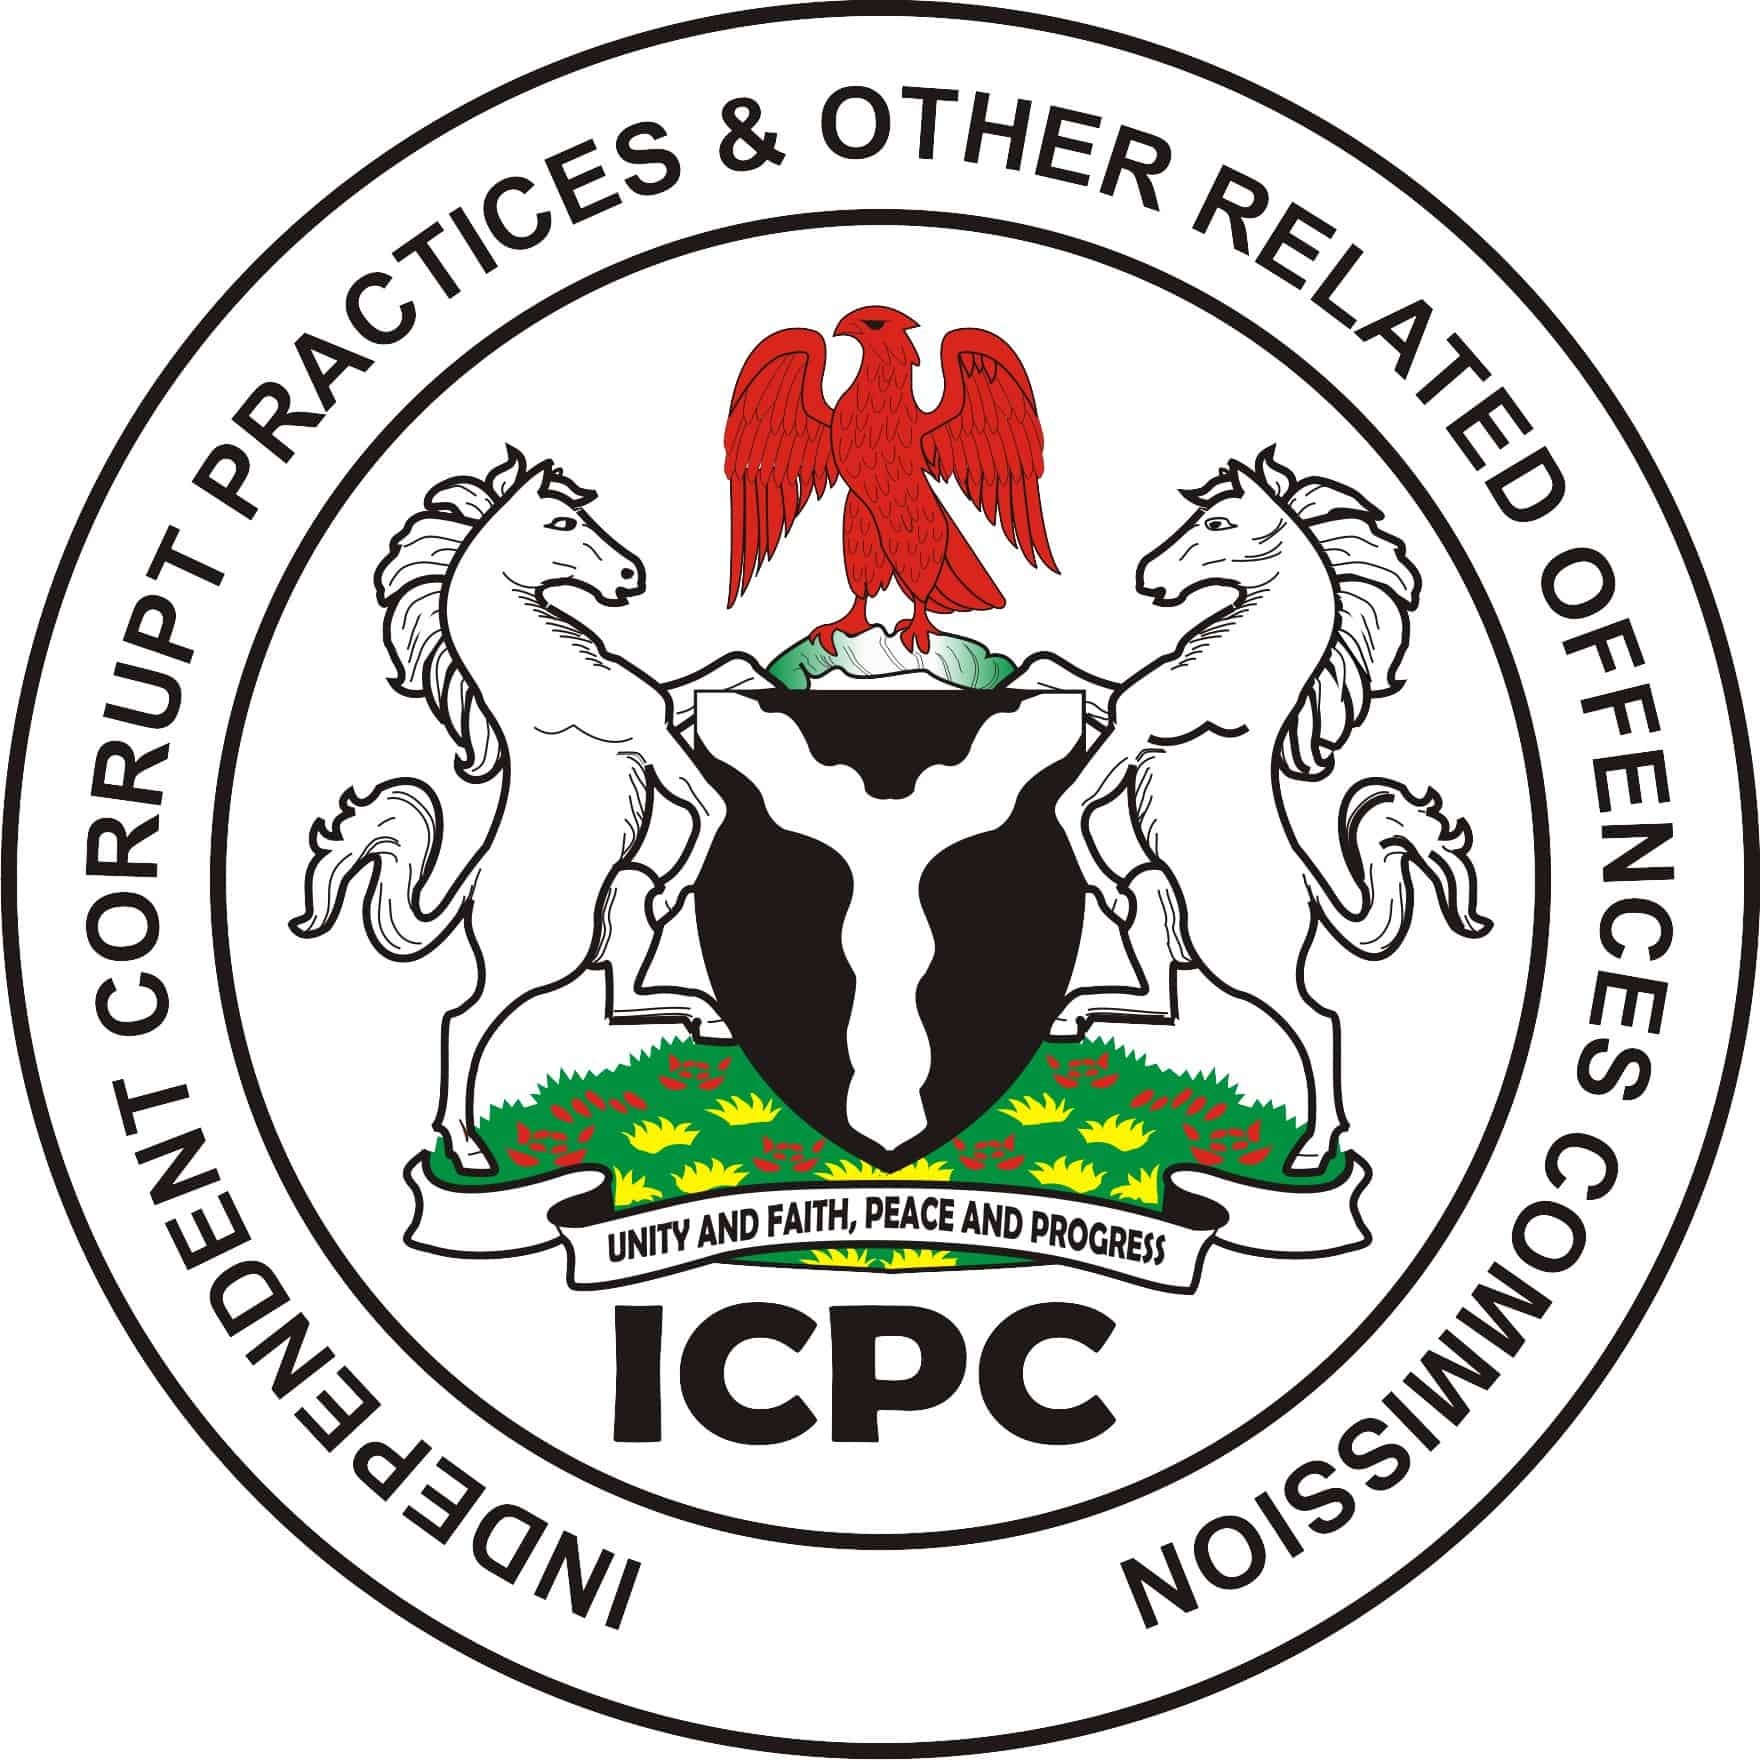 ICPC Shuts Illegal Institutions